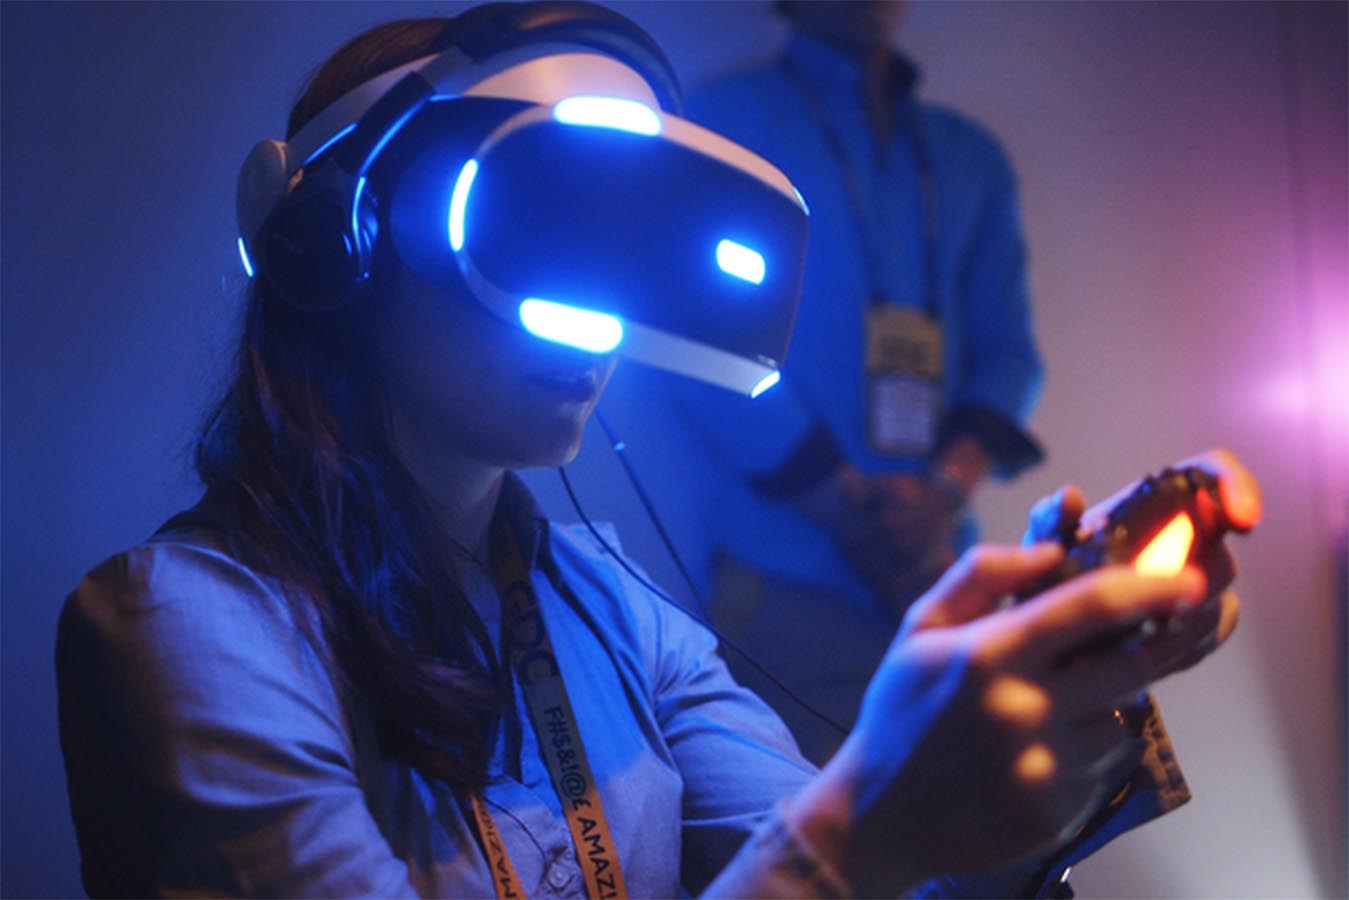 Виар очки поиграть. Sony PLAYSTATION VR игры. Девушка в шлеме виртуальной реальности. Очки виртуальной реальности арт. Игры для шлема виртуальной реальности.